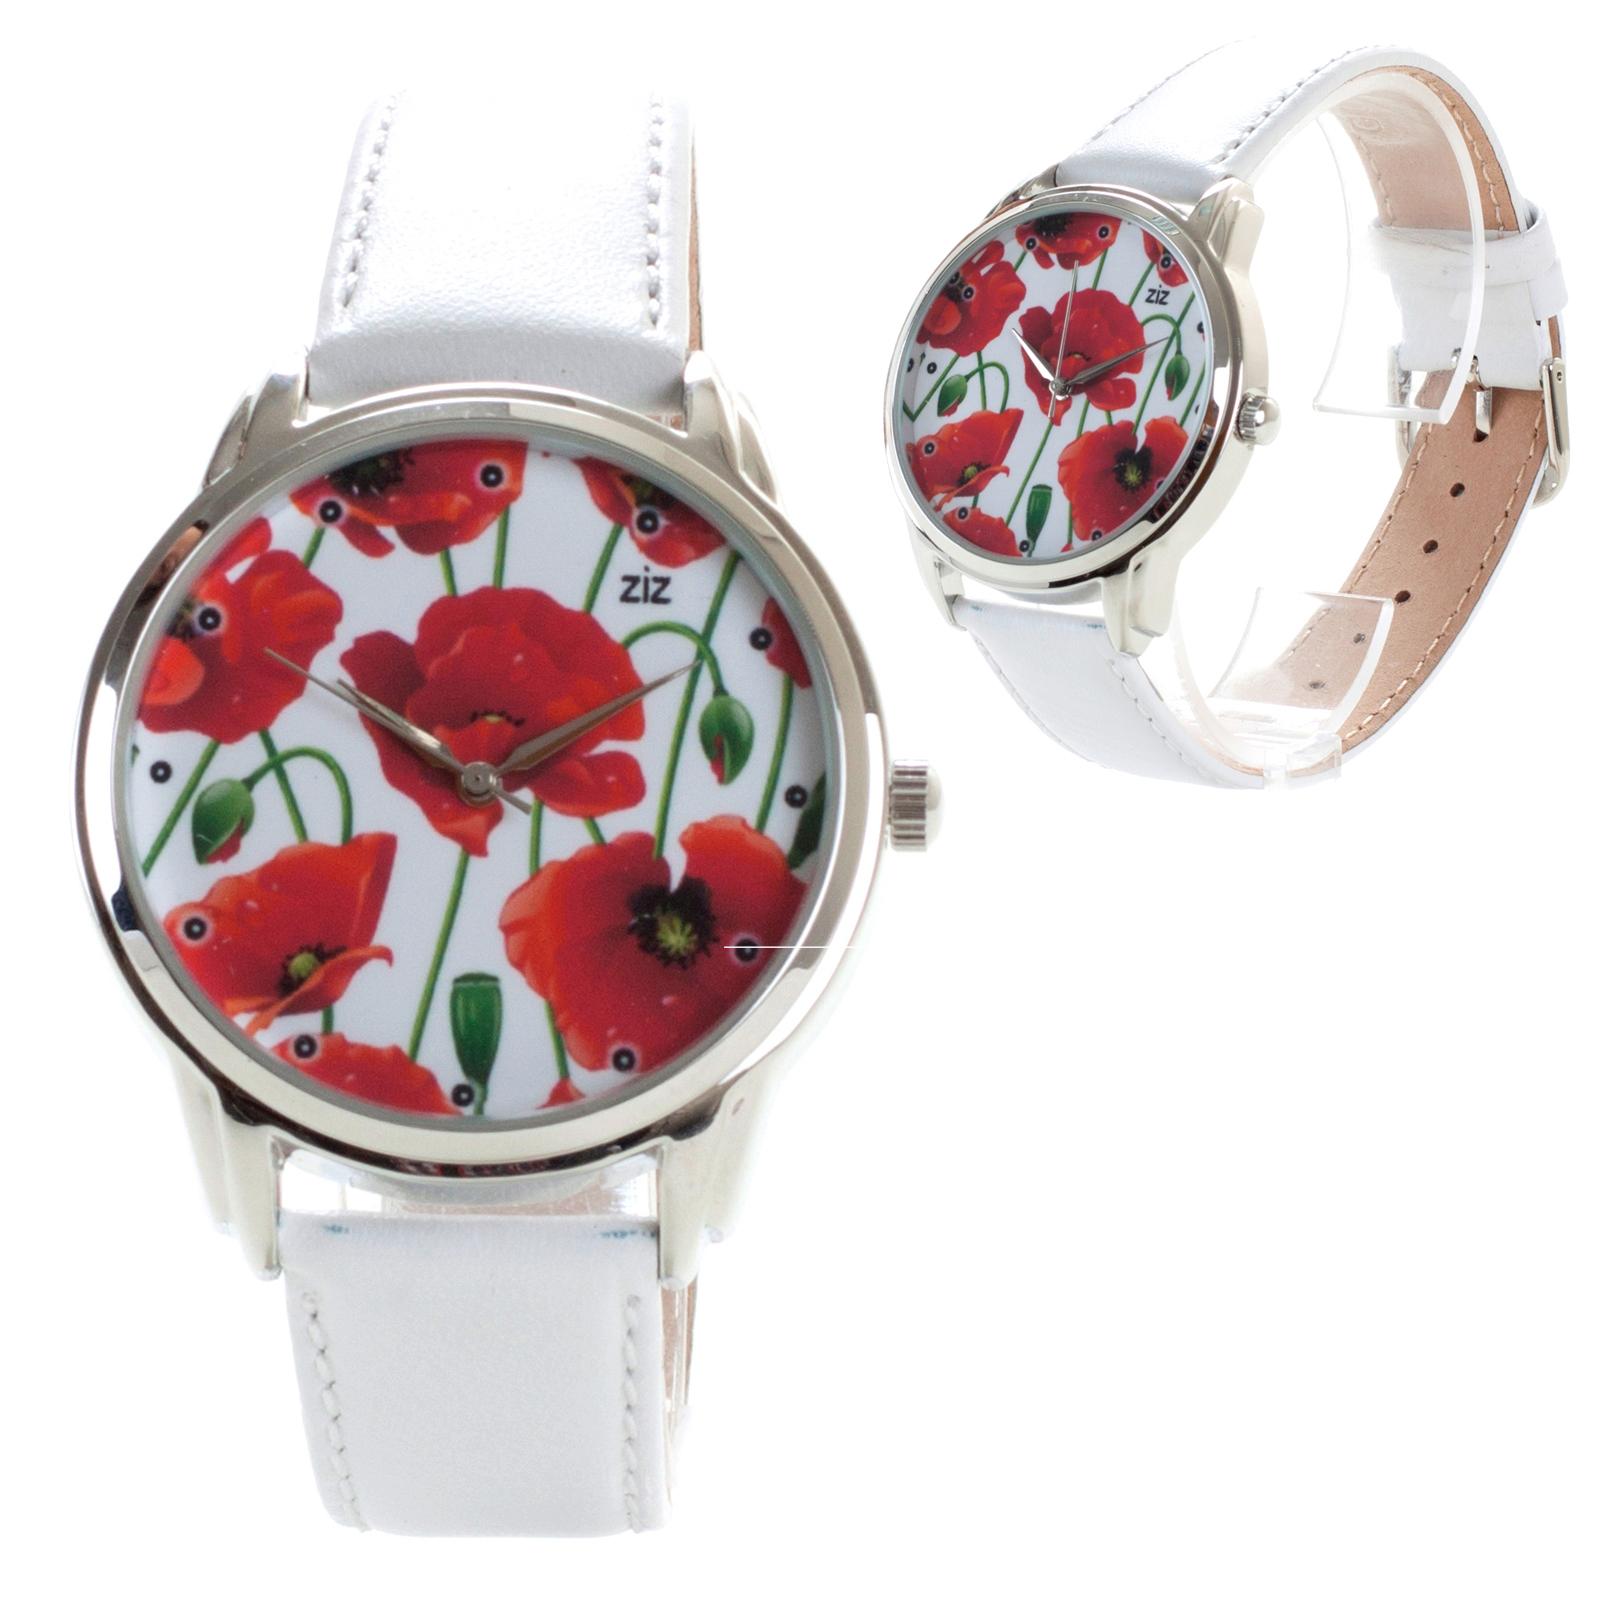 Купить Наручные часы ZIZ цветущие маки